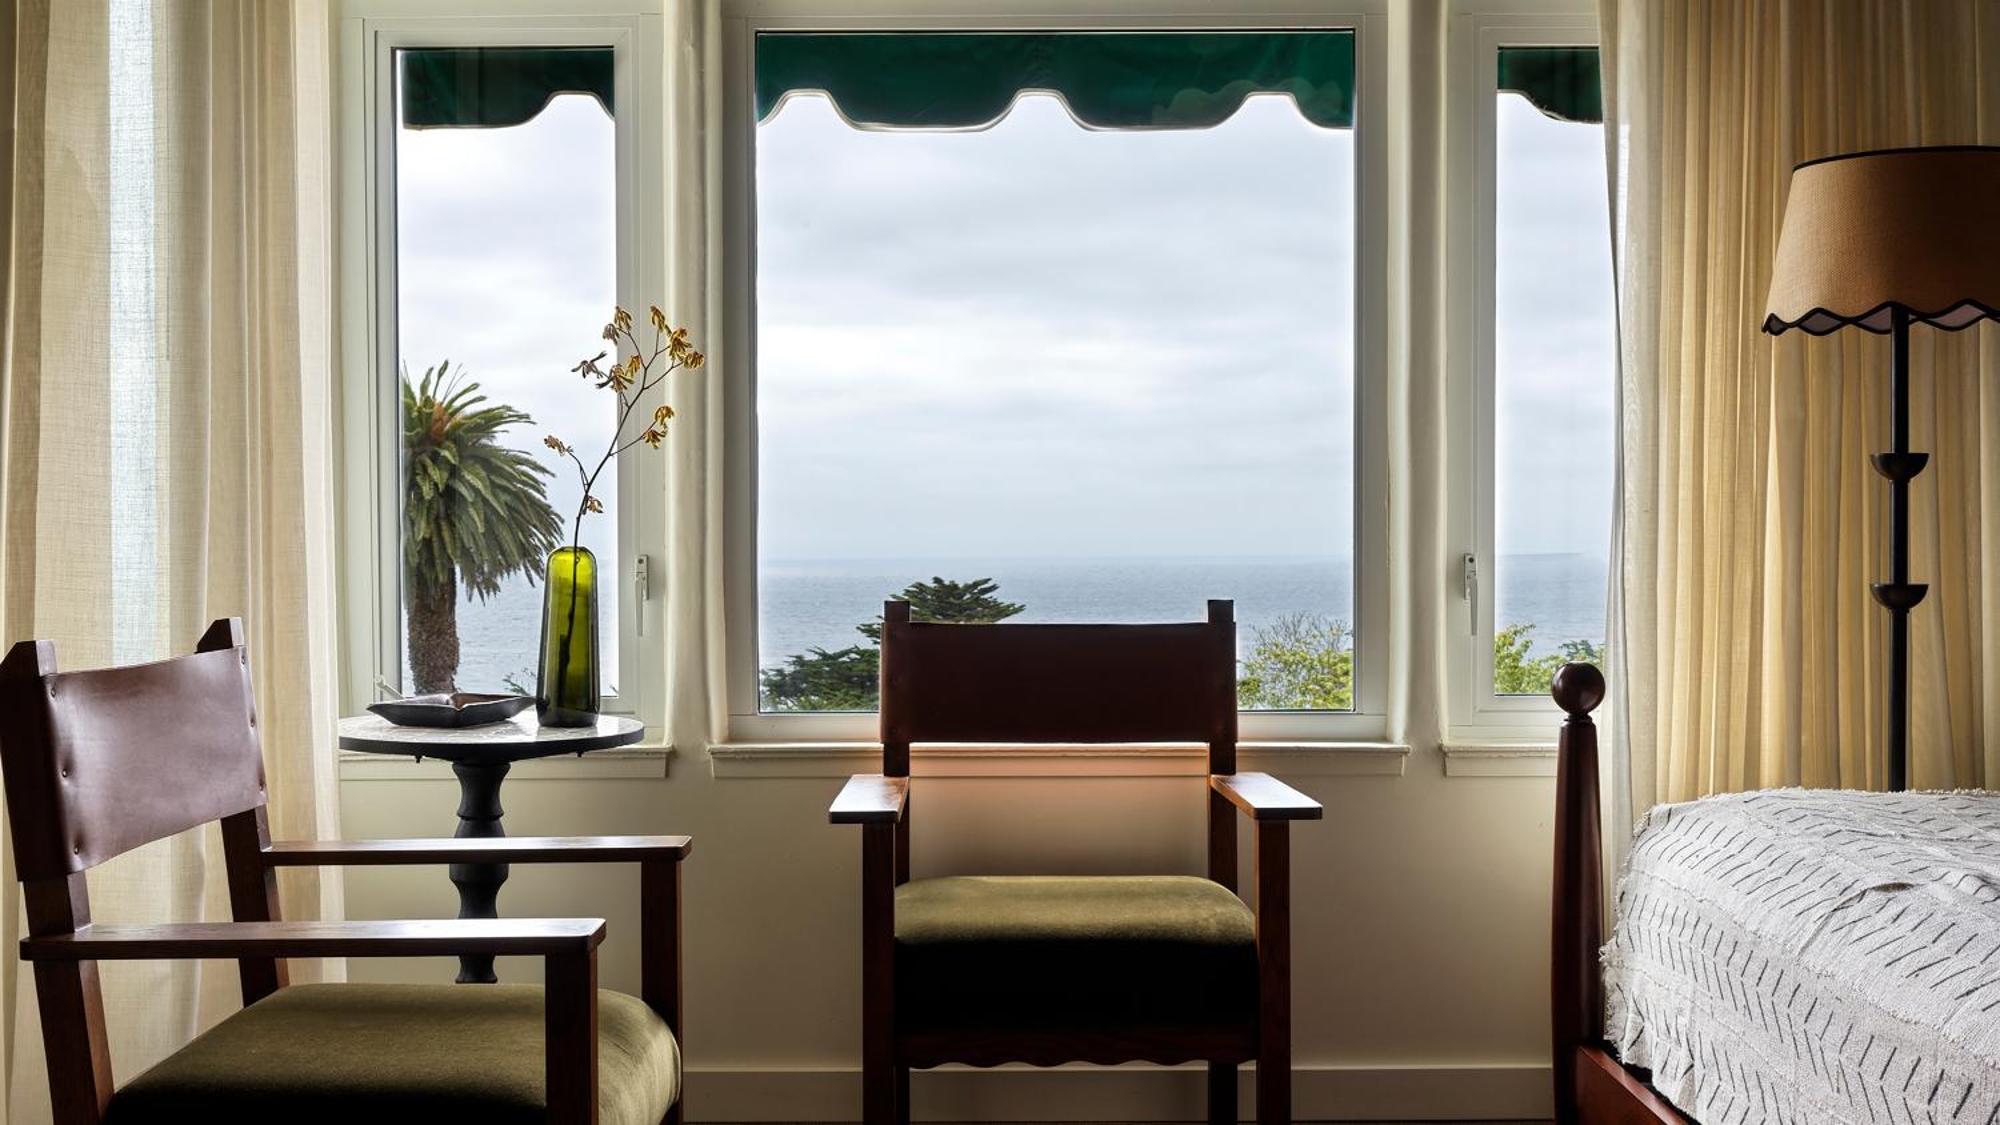 La Playa Hotel Carmel-by-the-Sea Exterior photo